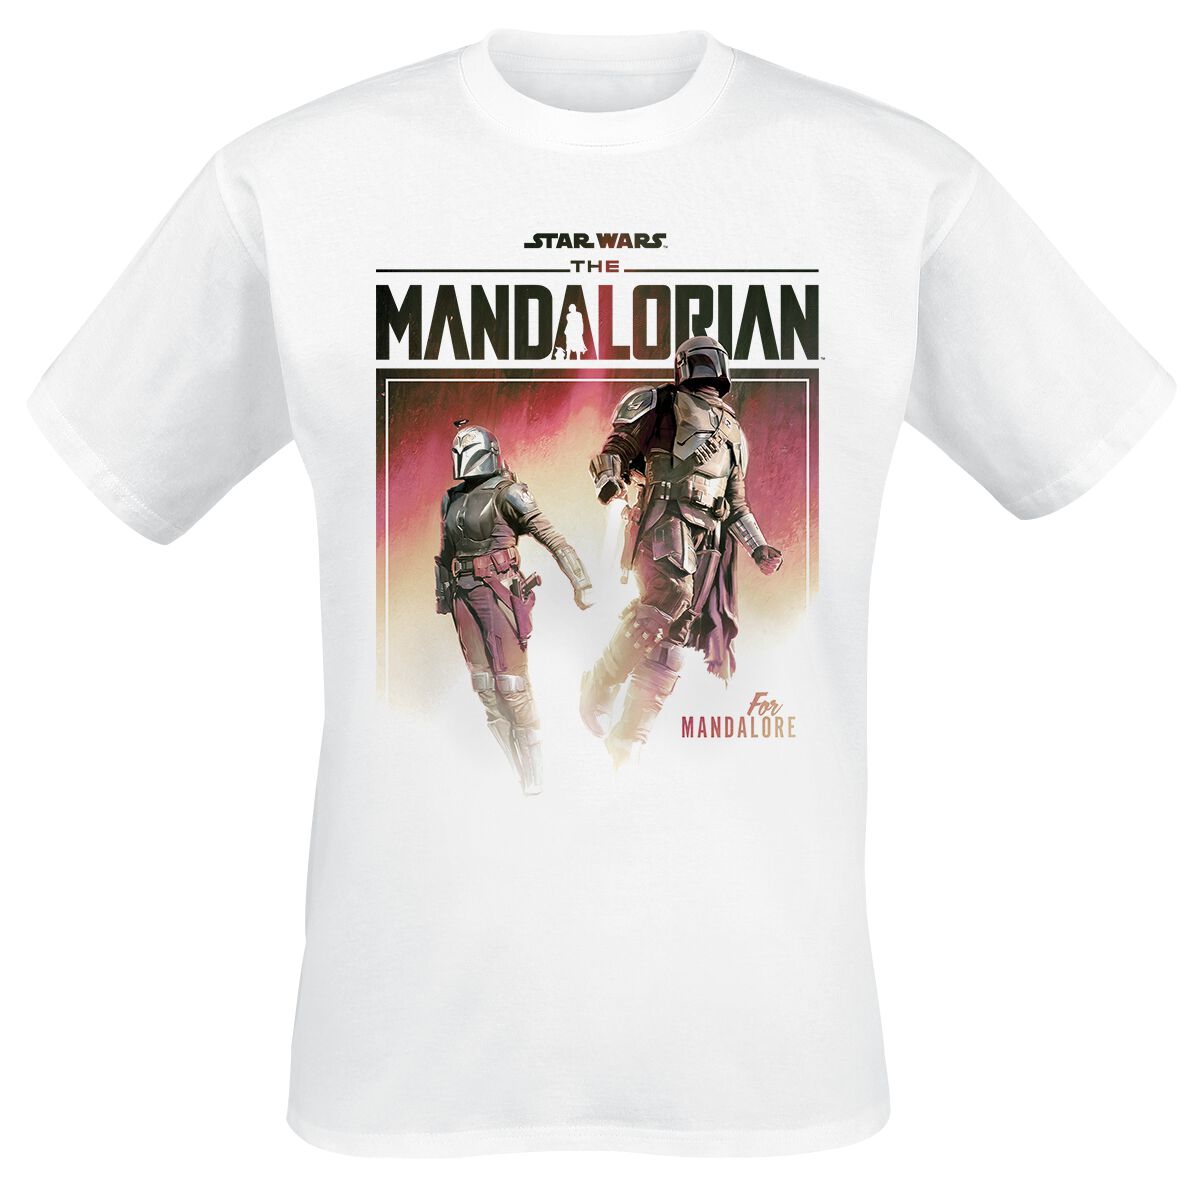 Star Wars T-Shirt - The Mandalorian - Season 3 - For Mandalore - S bis XL - für Männer - Größe XL - weiß  - Lizenzierter Fanartikel von Star Wars